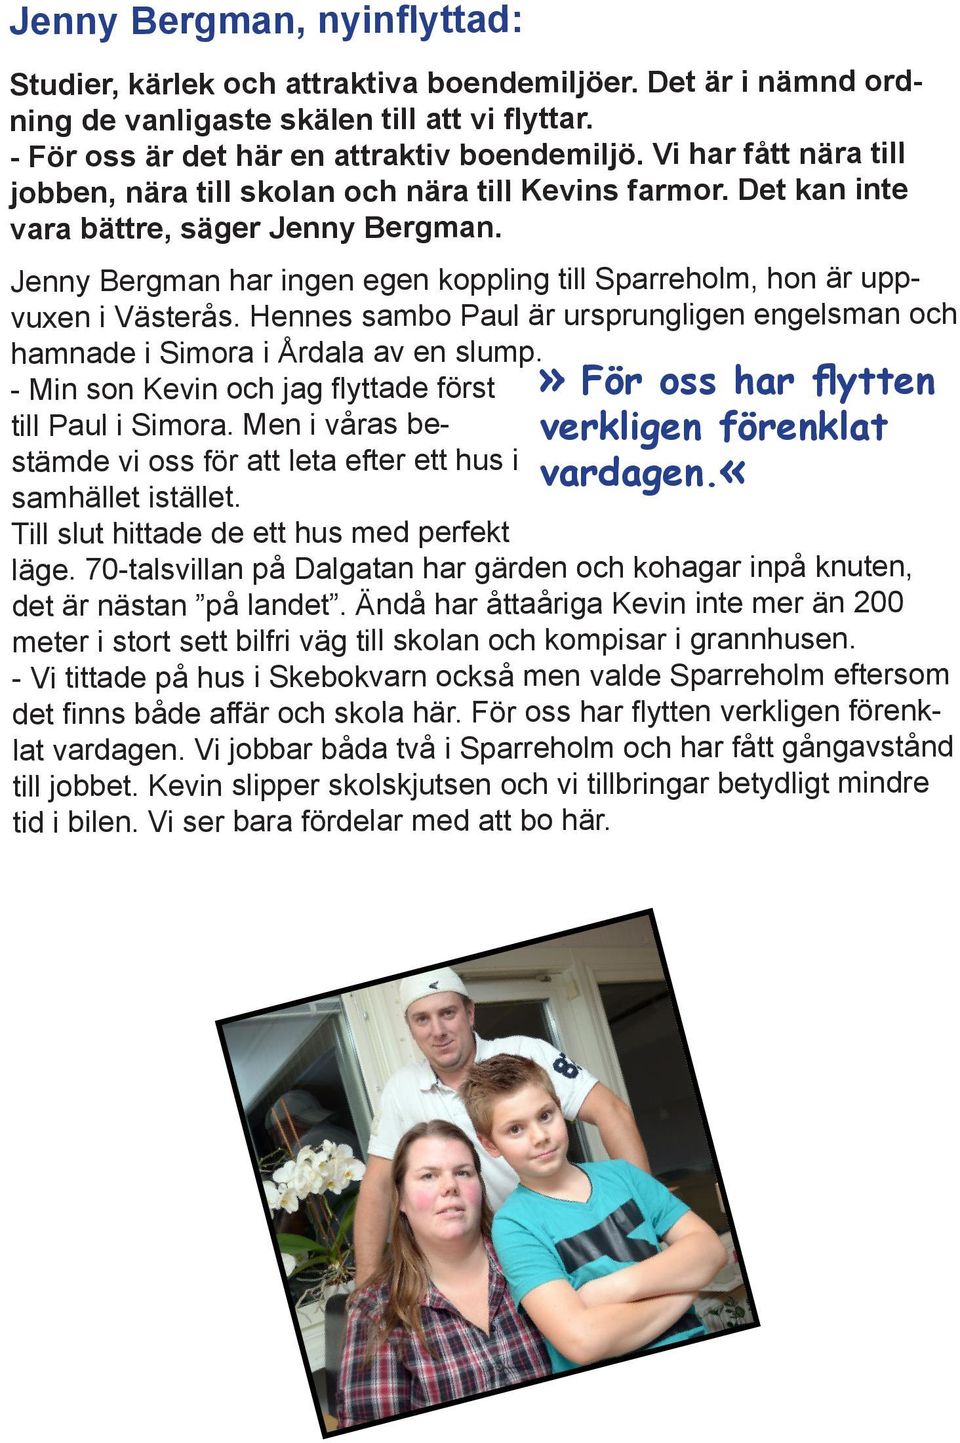 Jenny Bergman har ingen egen koppling till Sparreholm, hon är uppvuxen i Västerås. Hennes sambo Paul är ursprungligen engelsman och hamnade i Simora i Årdala av en slump.